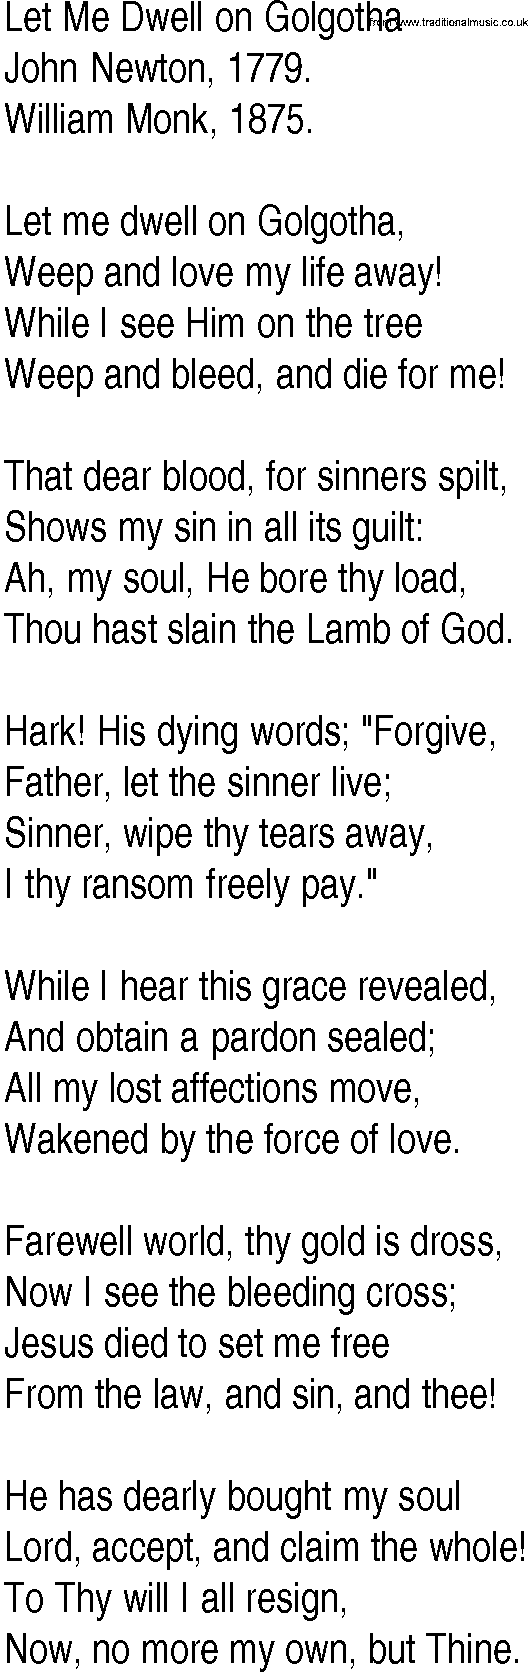 Hymn and Gospel Song: Let Me Dwell on Golgotha by John Newton lyrics